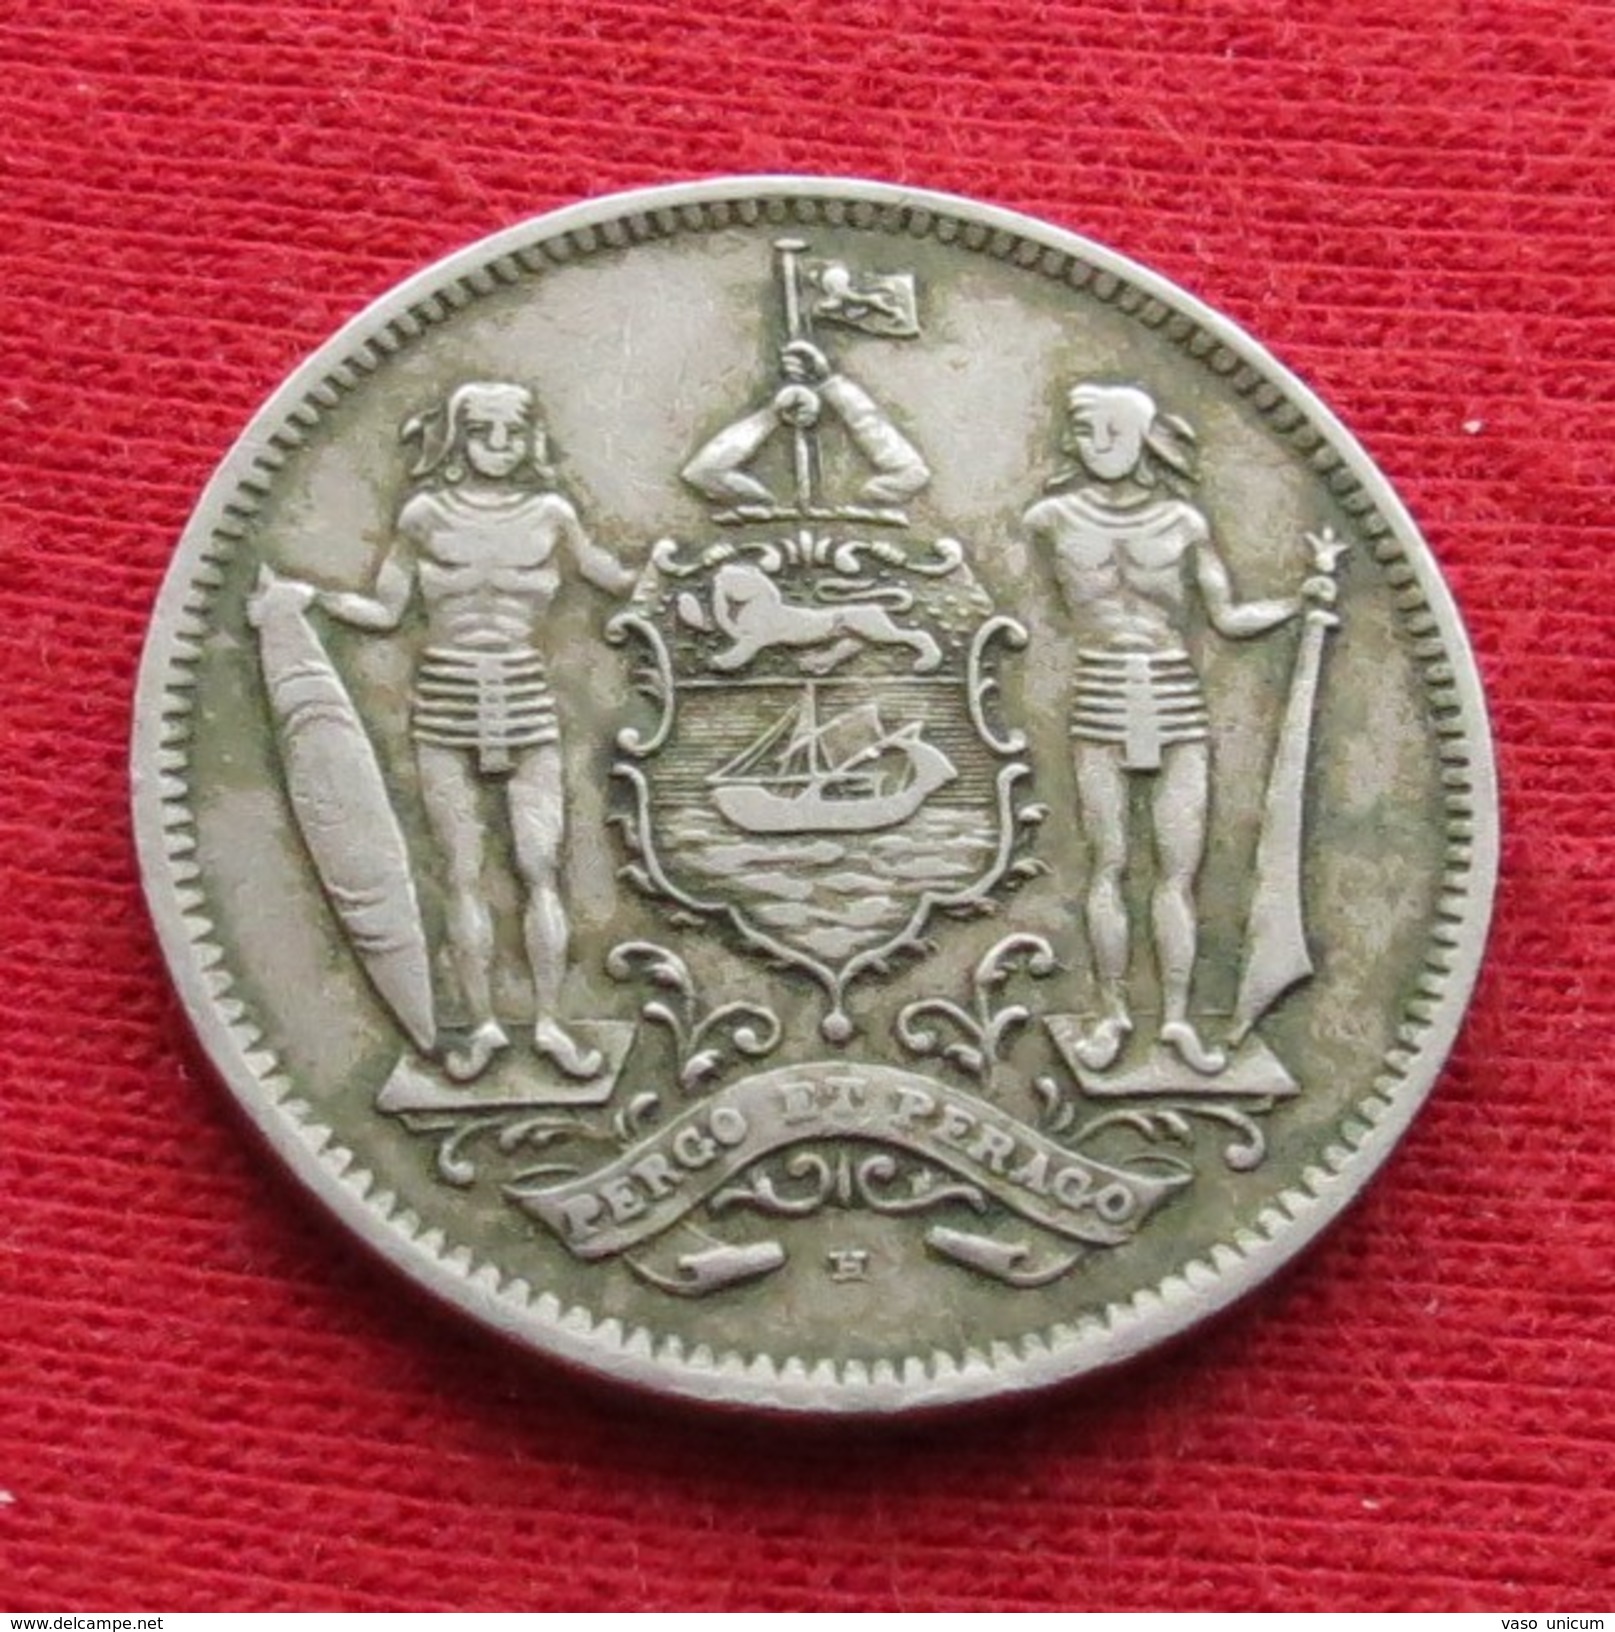 British North Borneo 5 Cent 1928 - Other - Asia